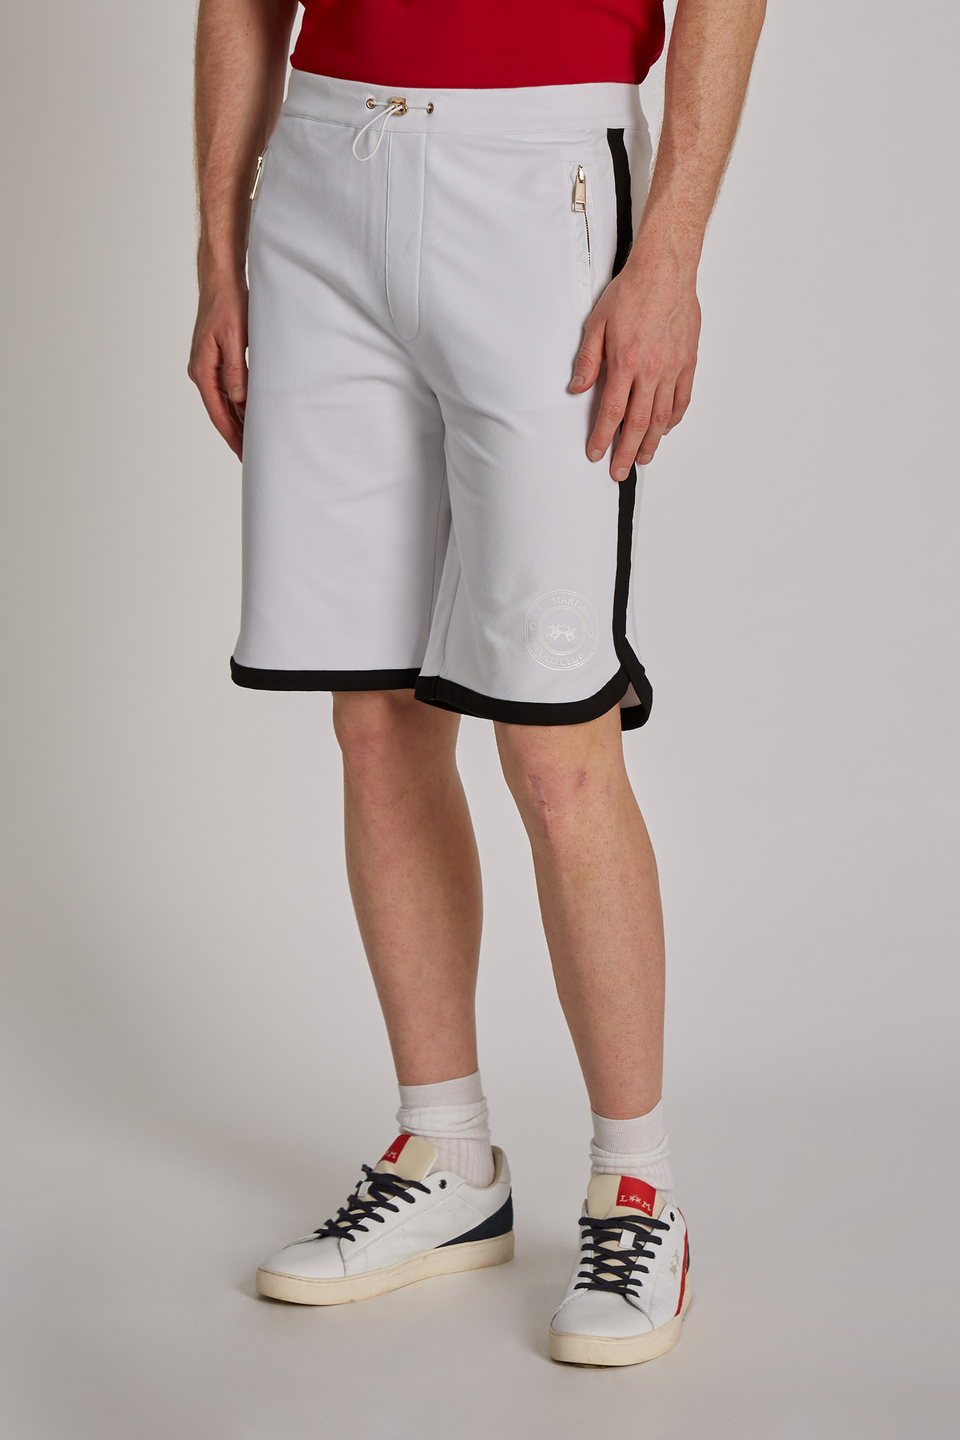 Regular-fit 100% cotton Bermuda shorts | La Martina - Official Online Shop